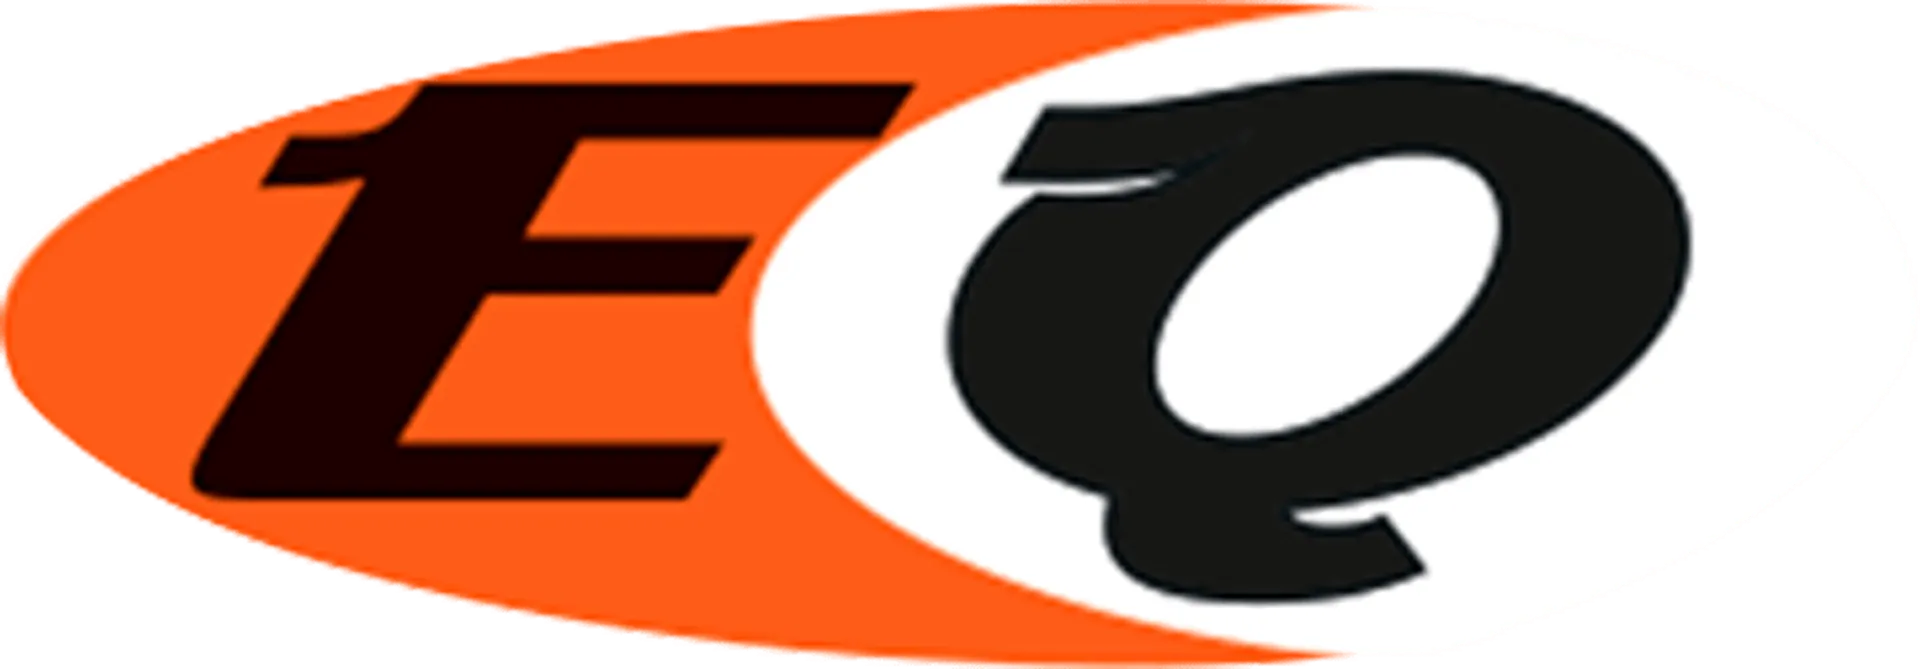 EQUILIBRIO logo